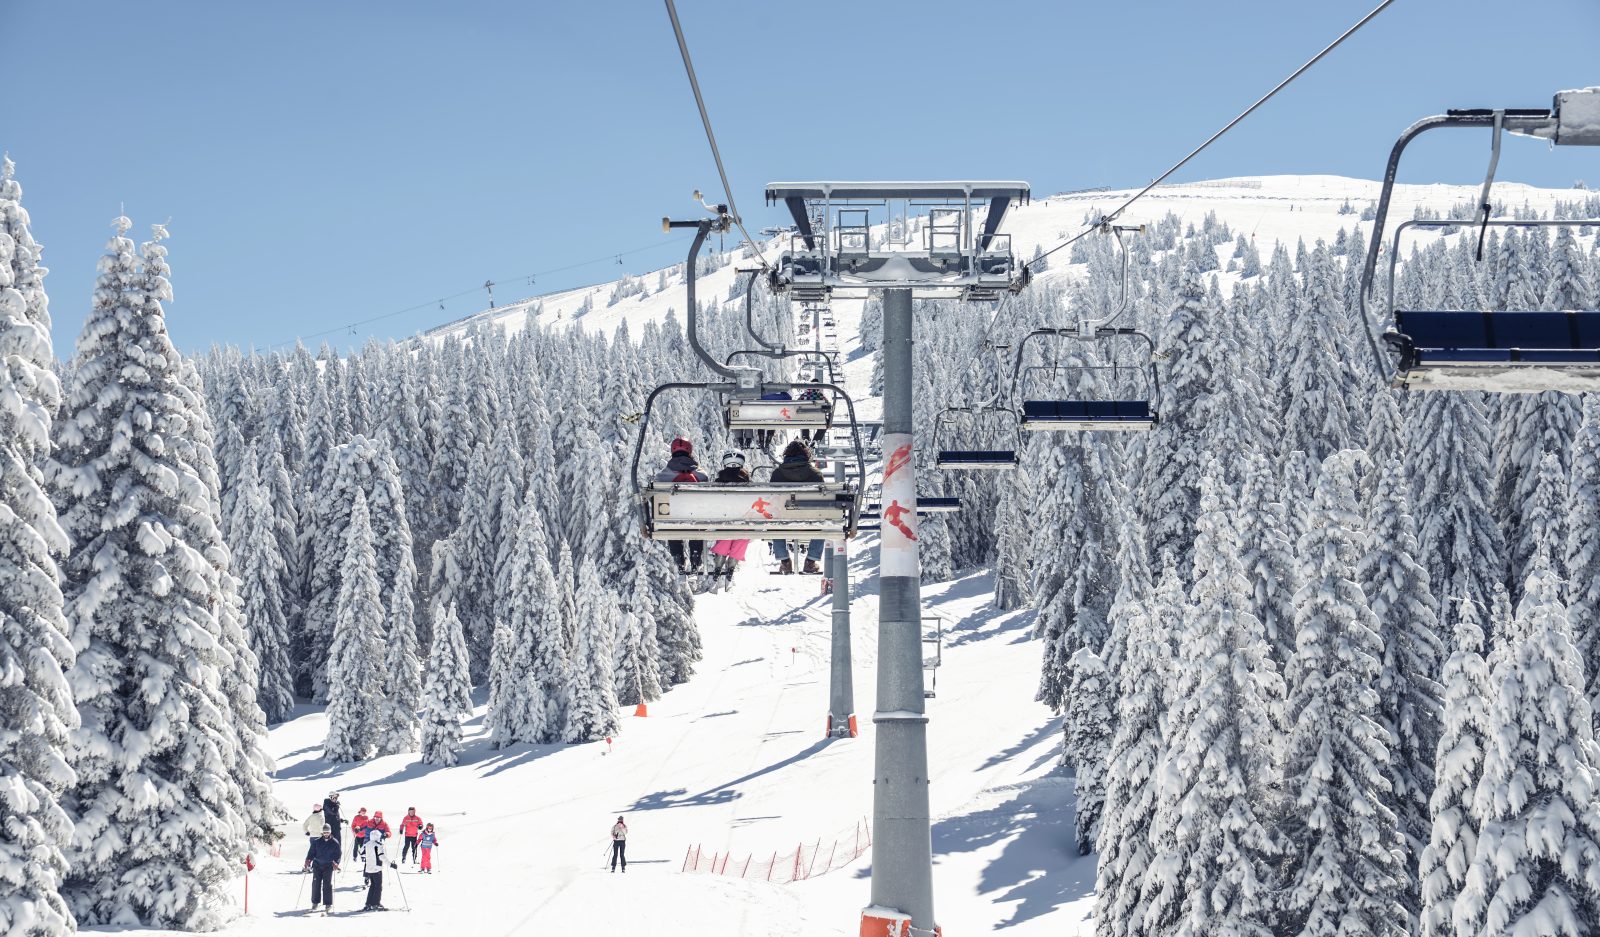 2023/2024 European ski season opening and closing dates ❄️